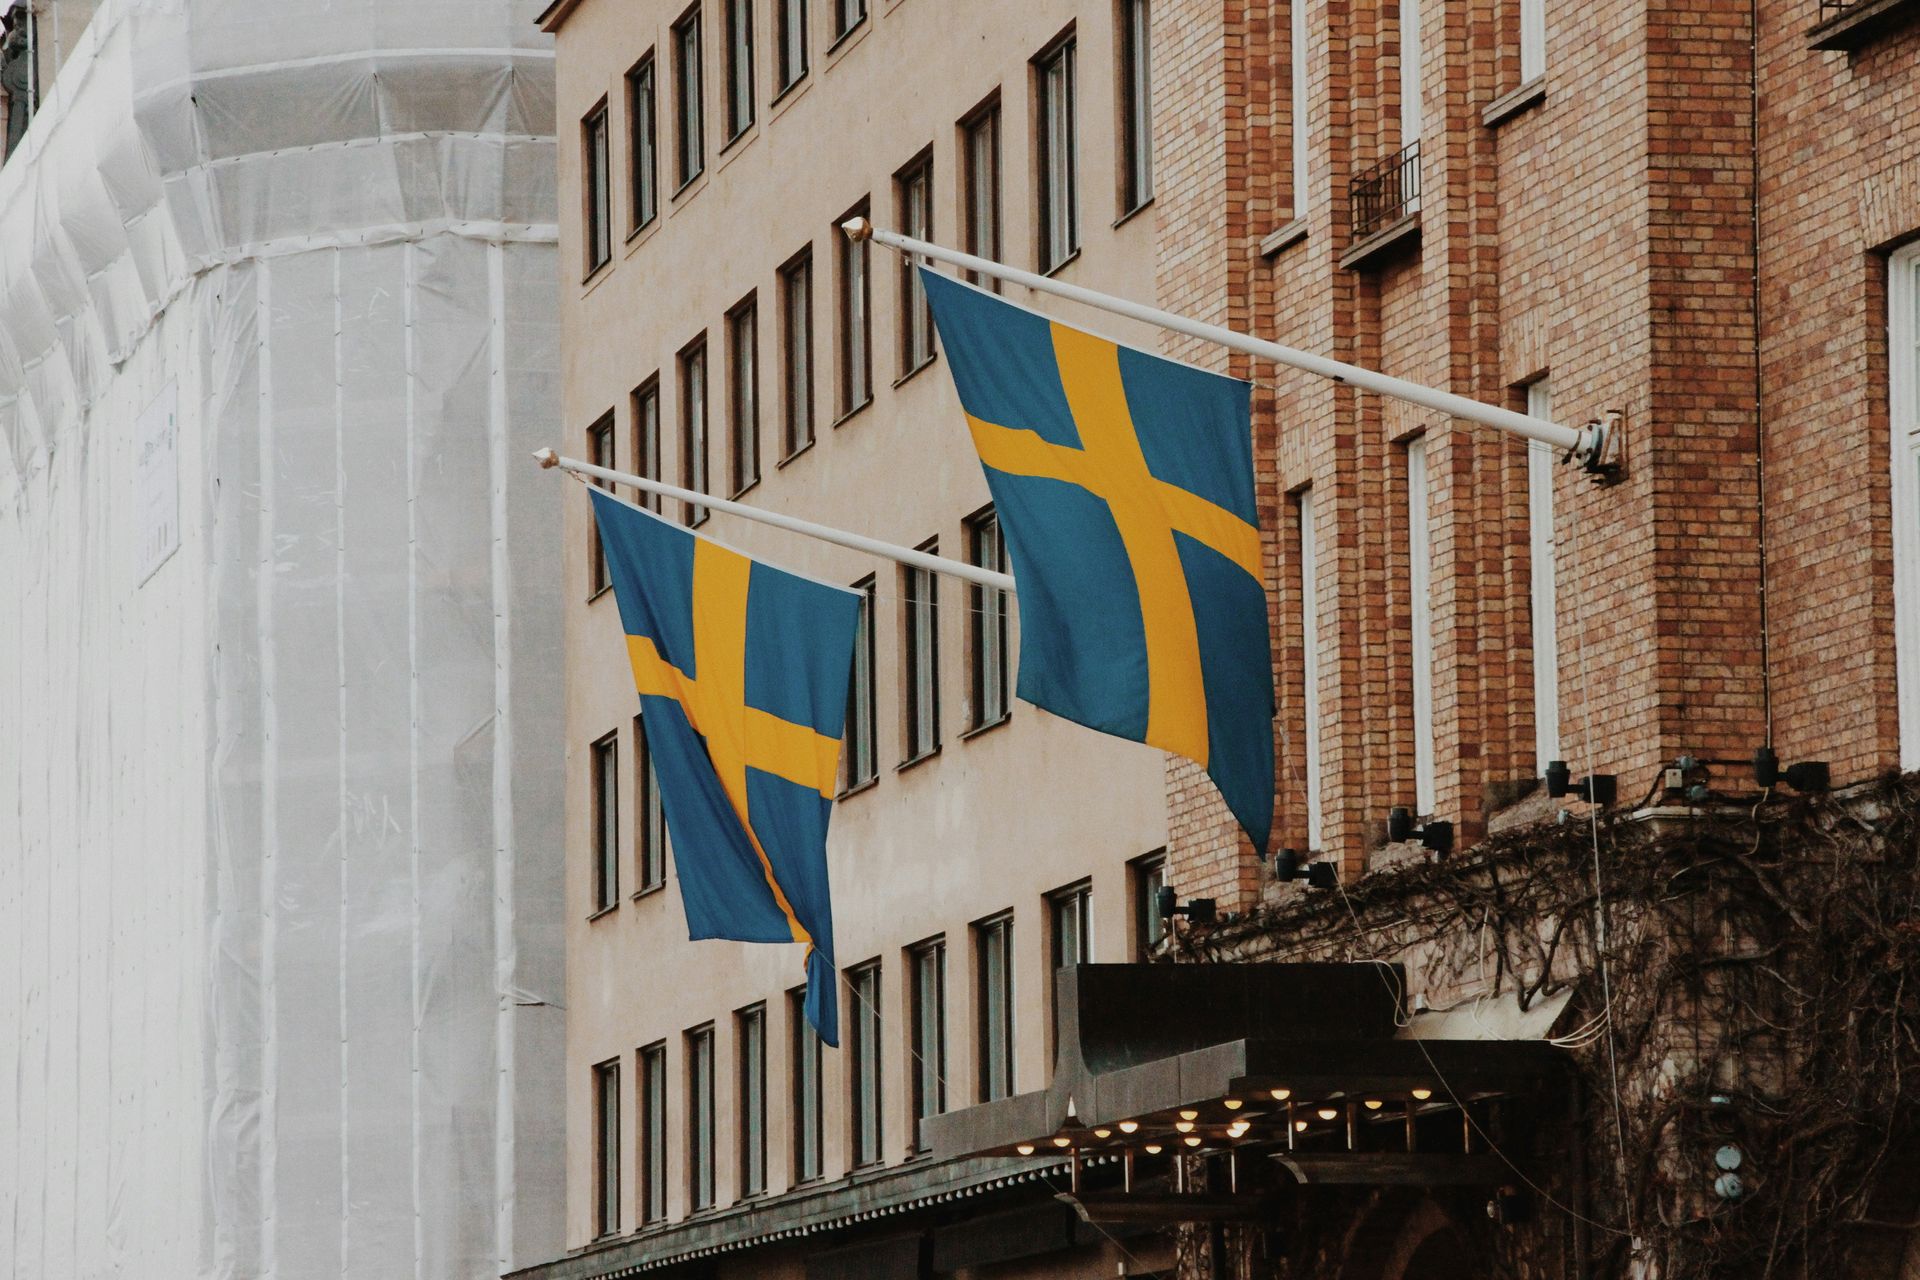 The Swedish counterexample